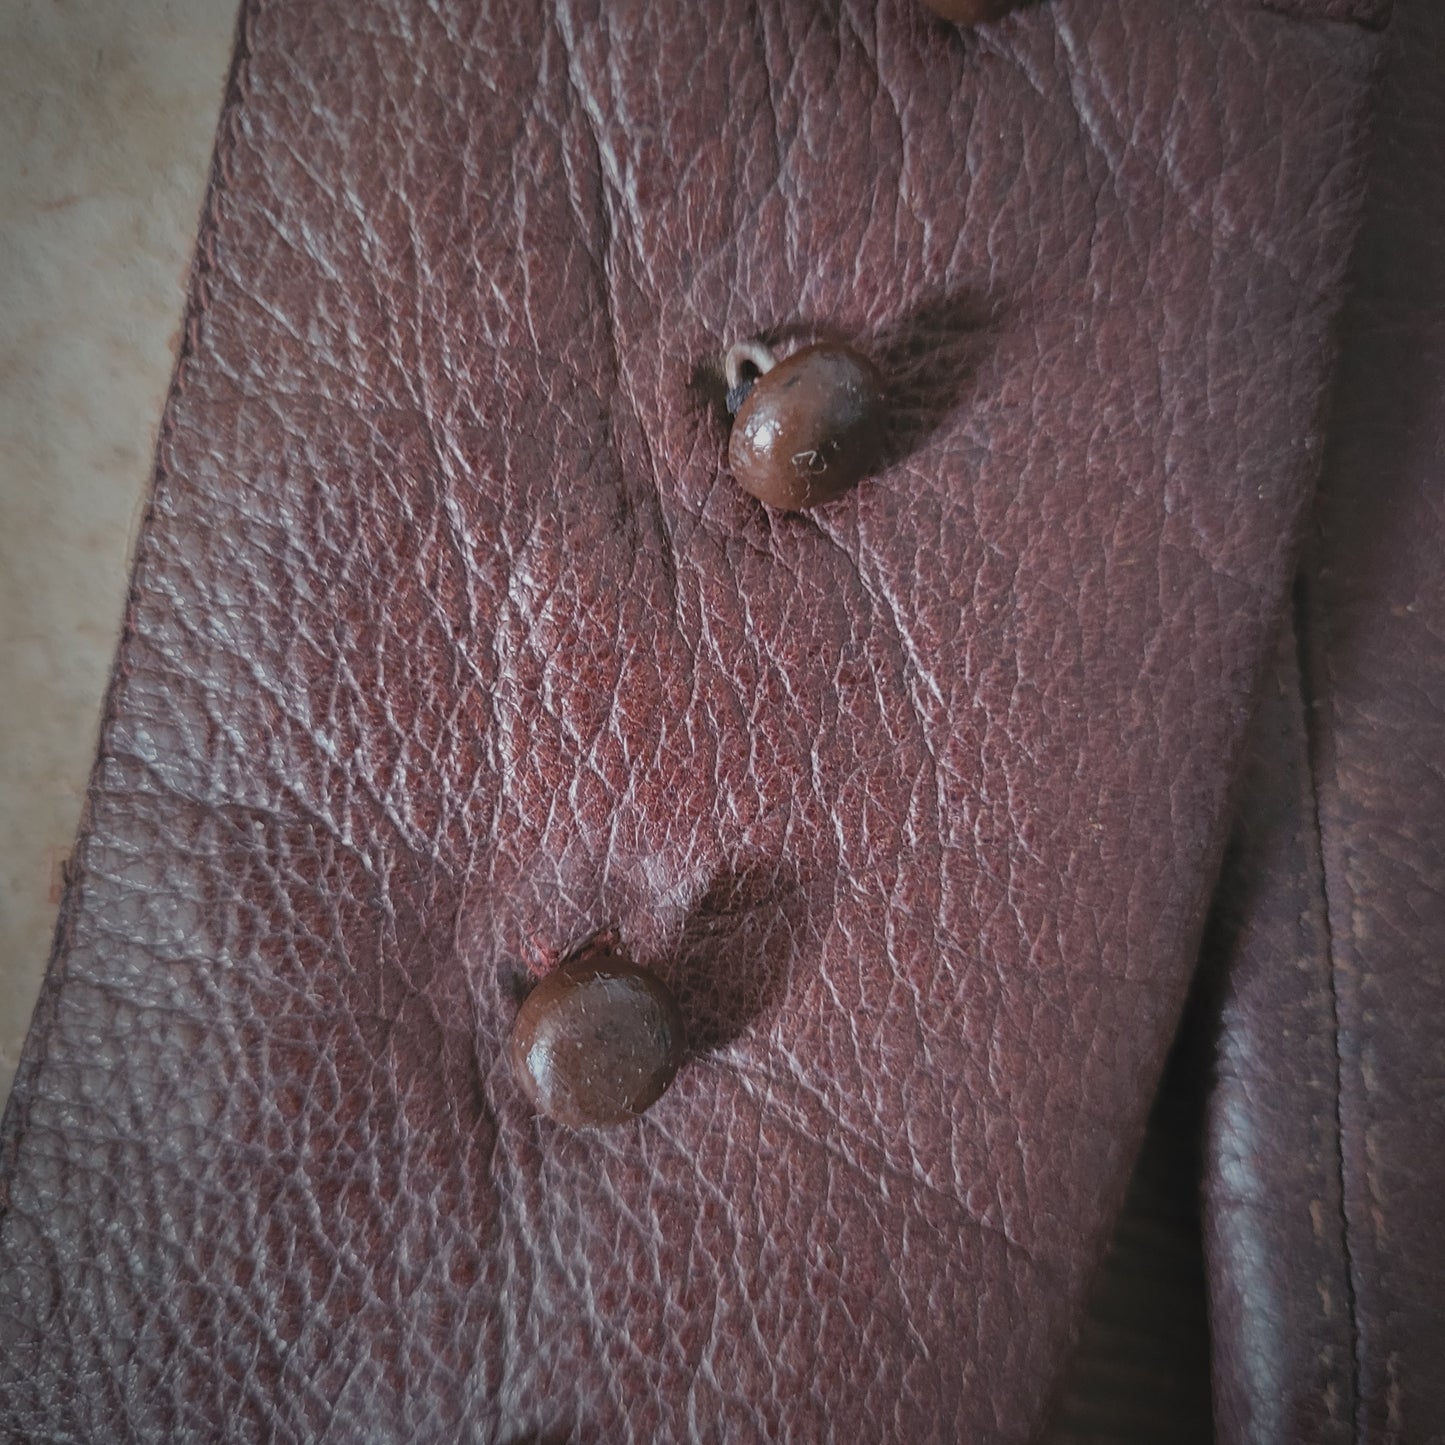 Leather 30's gaiters leggings / Guêtres, jambières cuir années 30